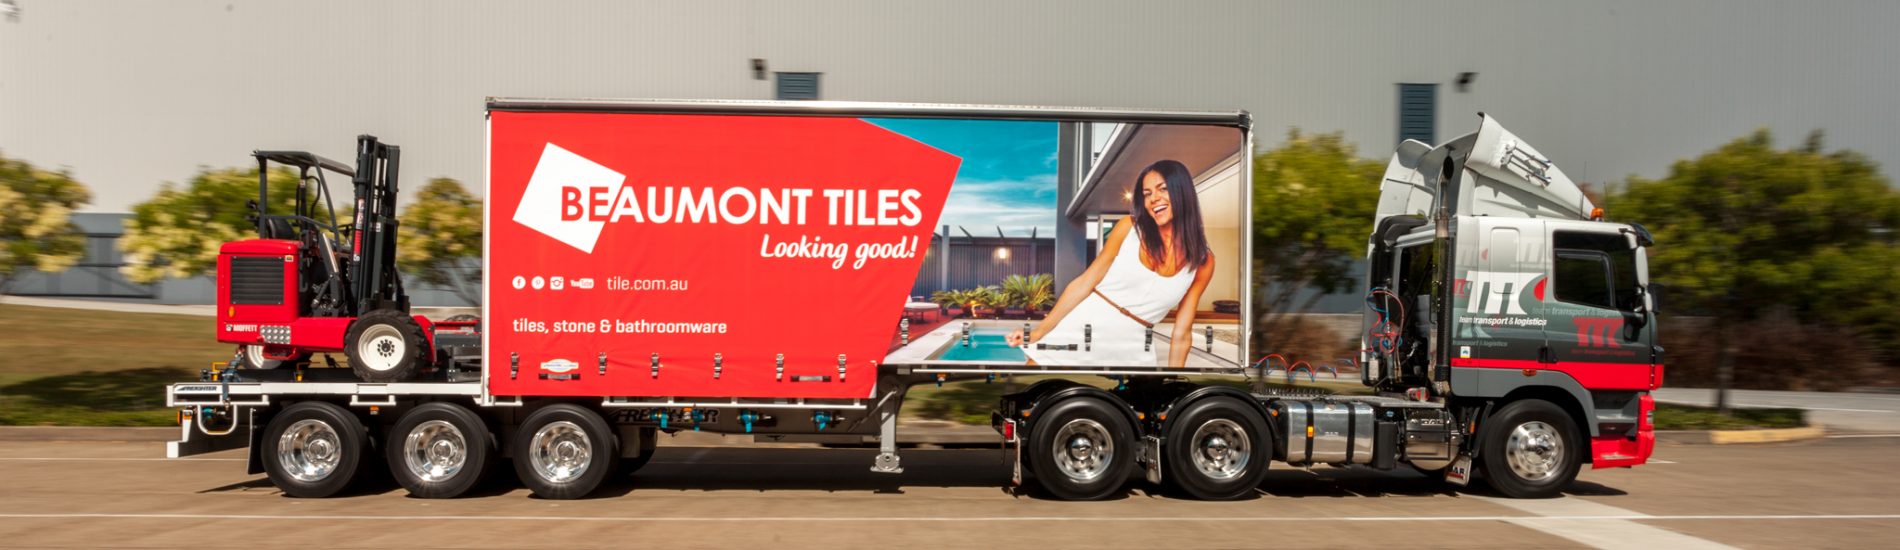 An advertisement hoarding on team transport truck